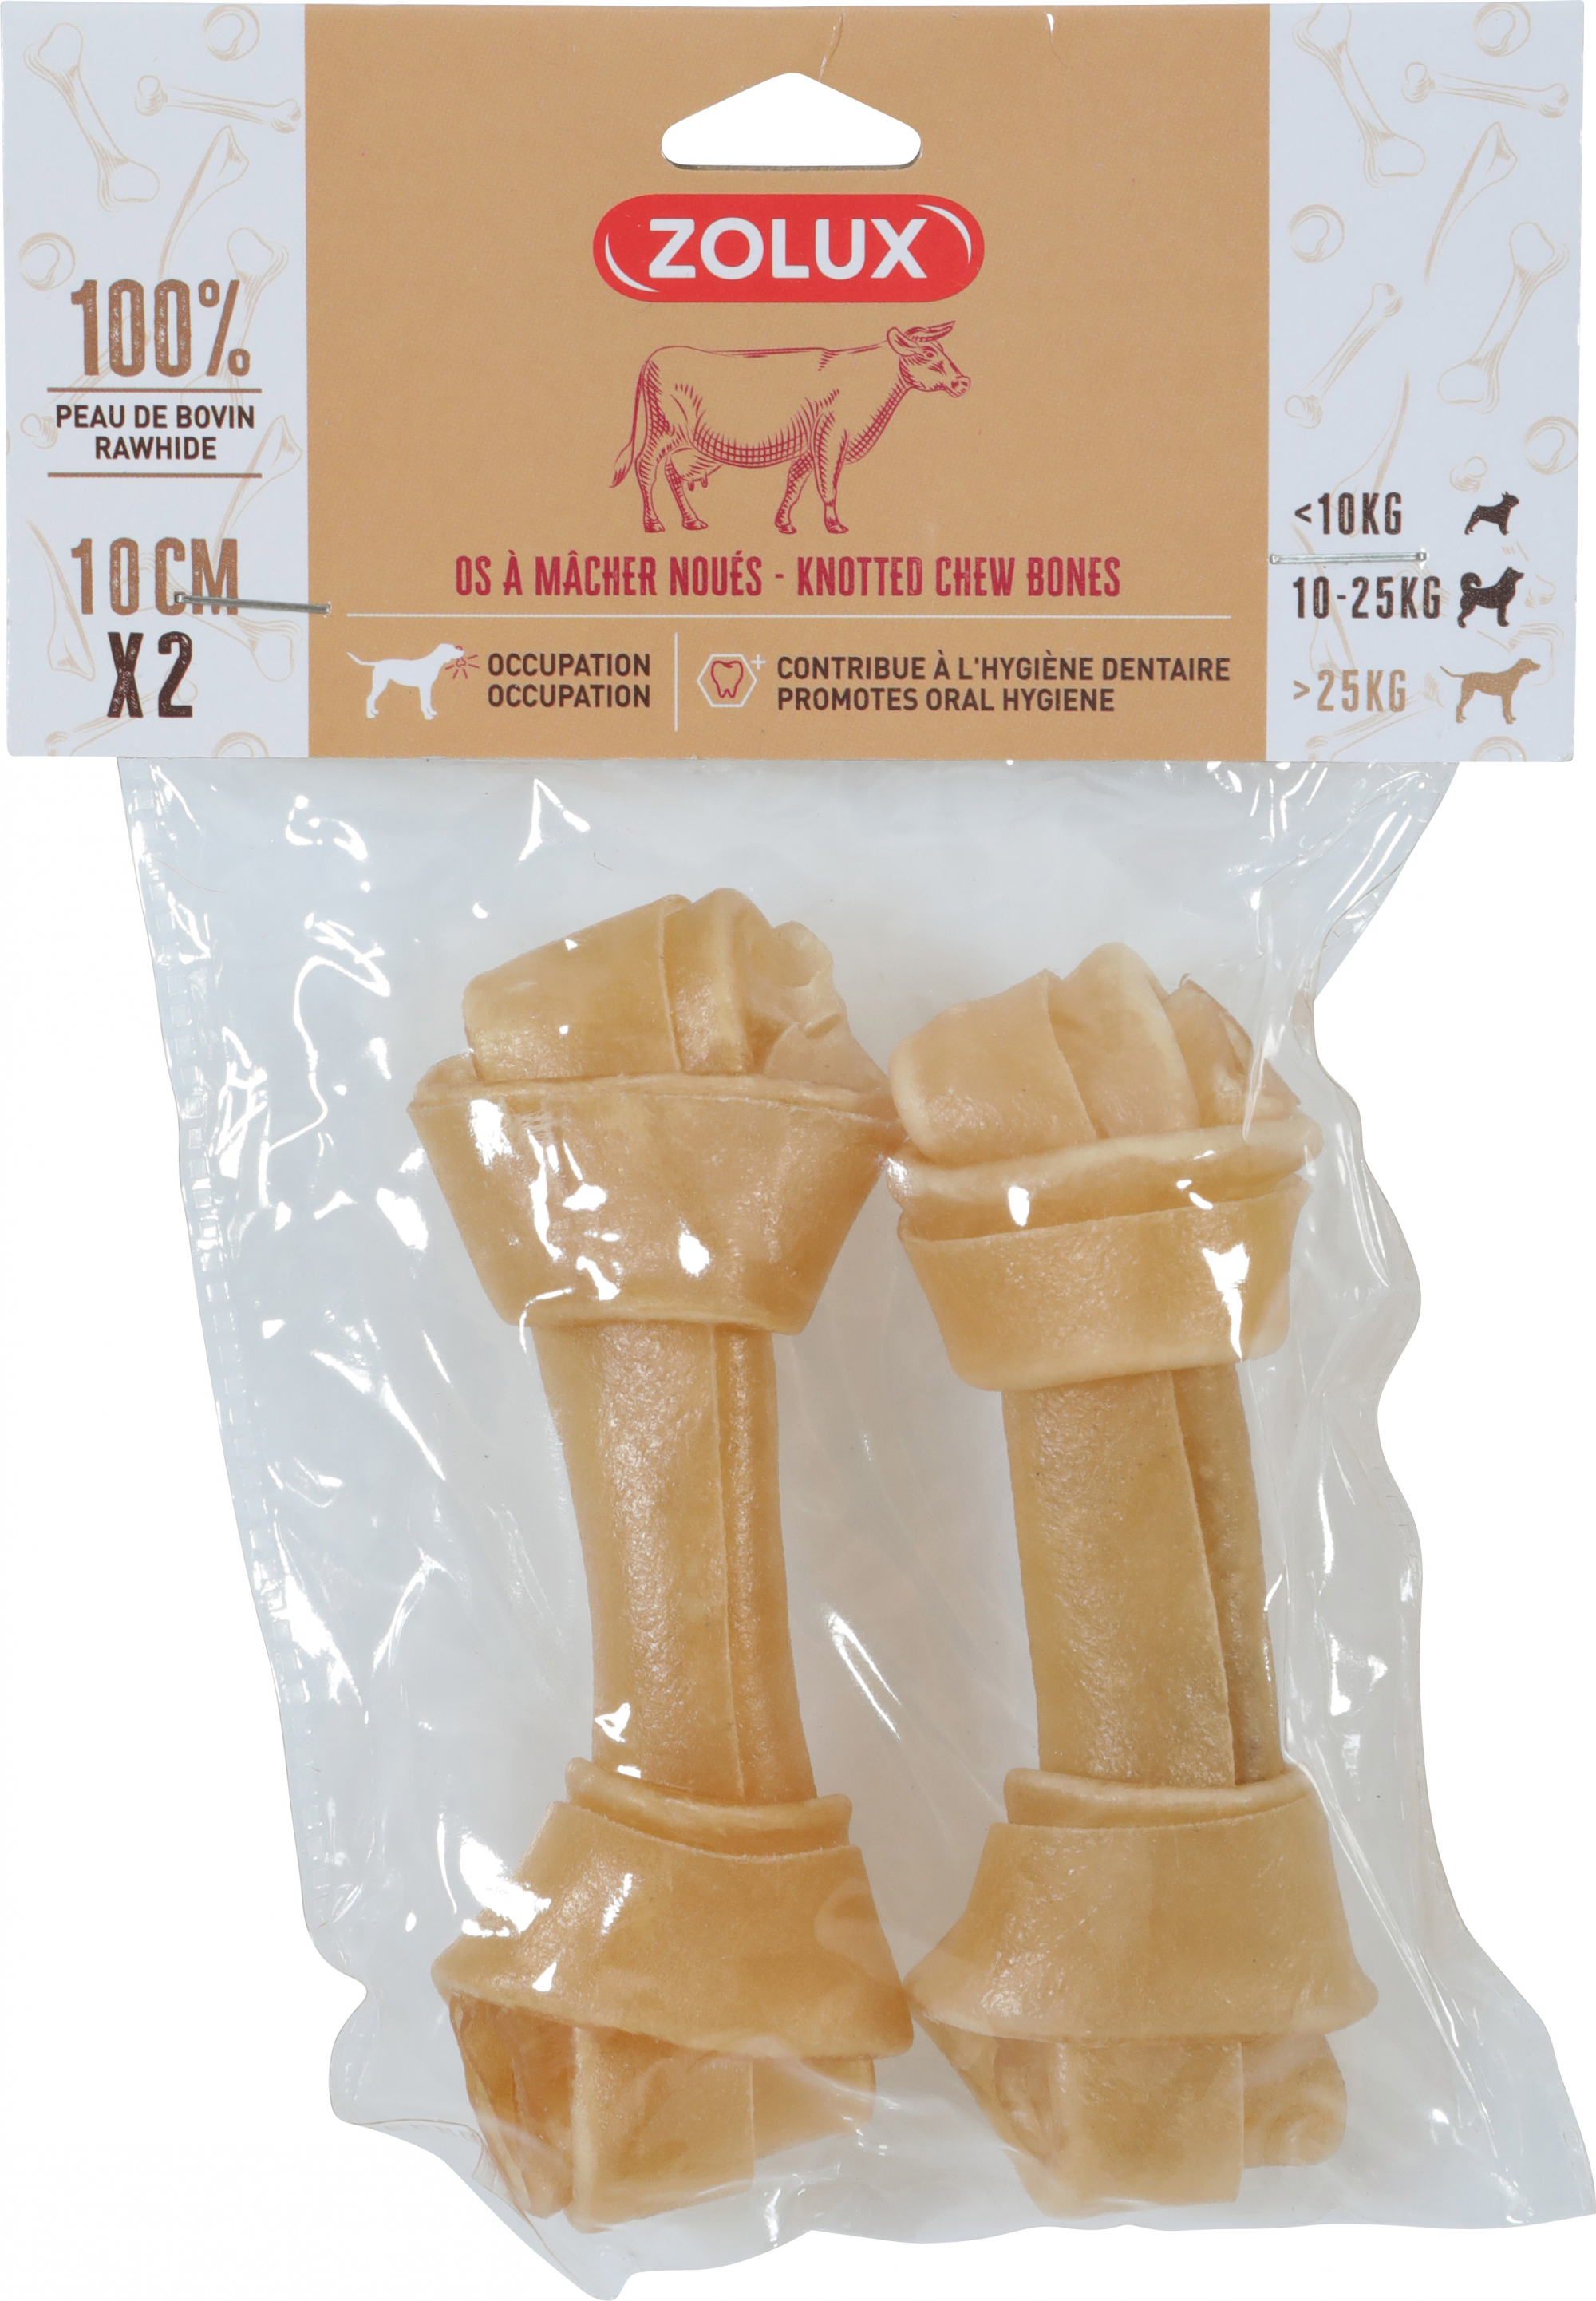 Geknoteter Kauknochen aus Rinderhaut für Hunde - 5 Größen erhältlich